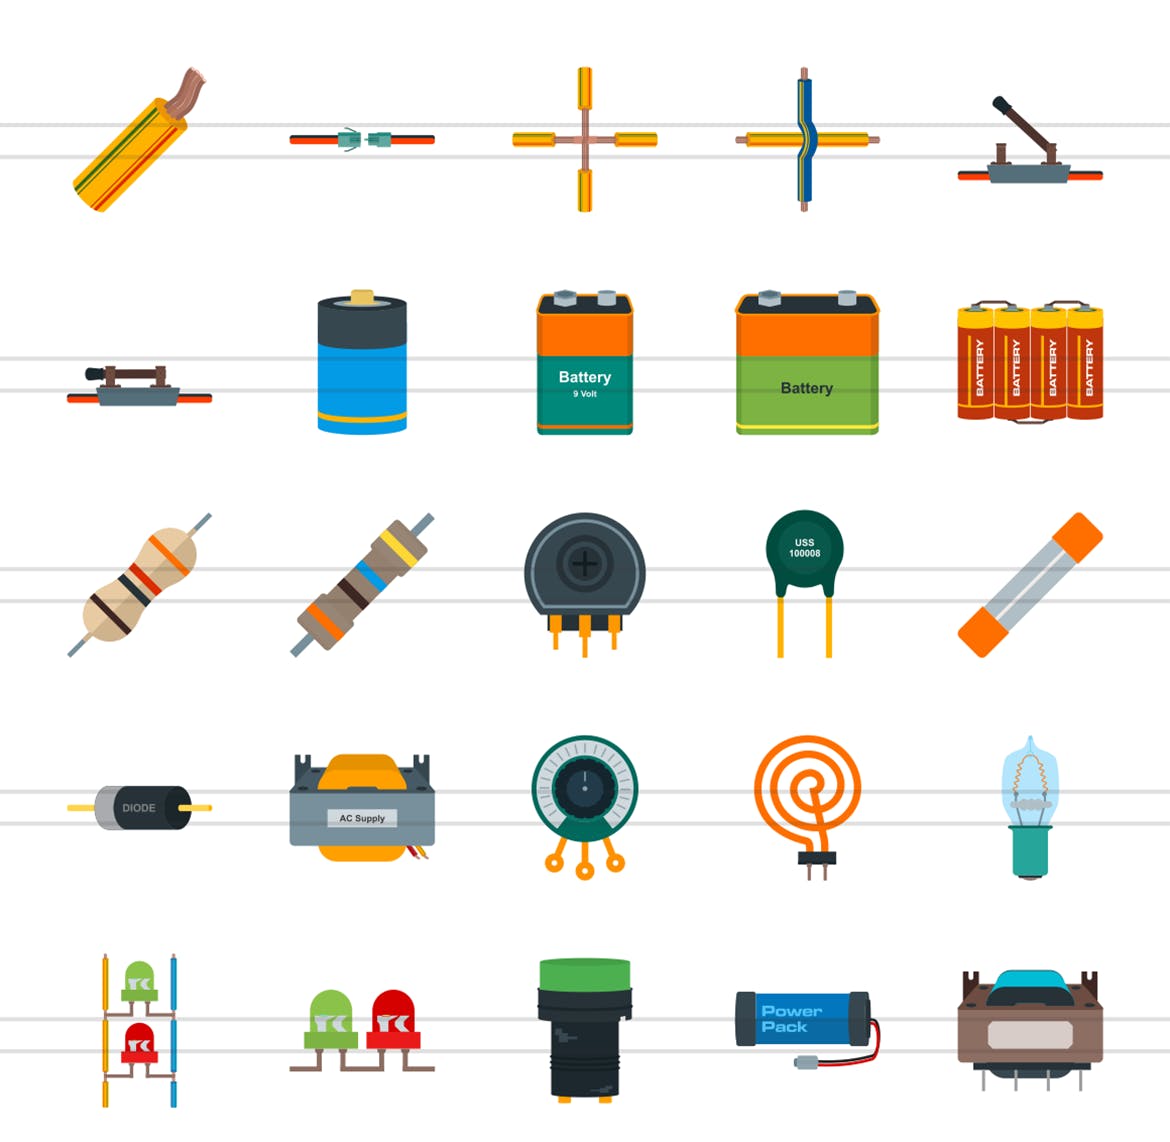 50枚电路线路板主题扁平化彩色矢量素材天下精选图标 50 Electric Circuits Flat Multicolor Icons插图(1)